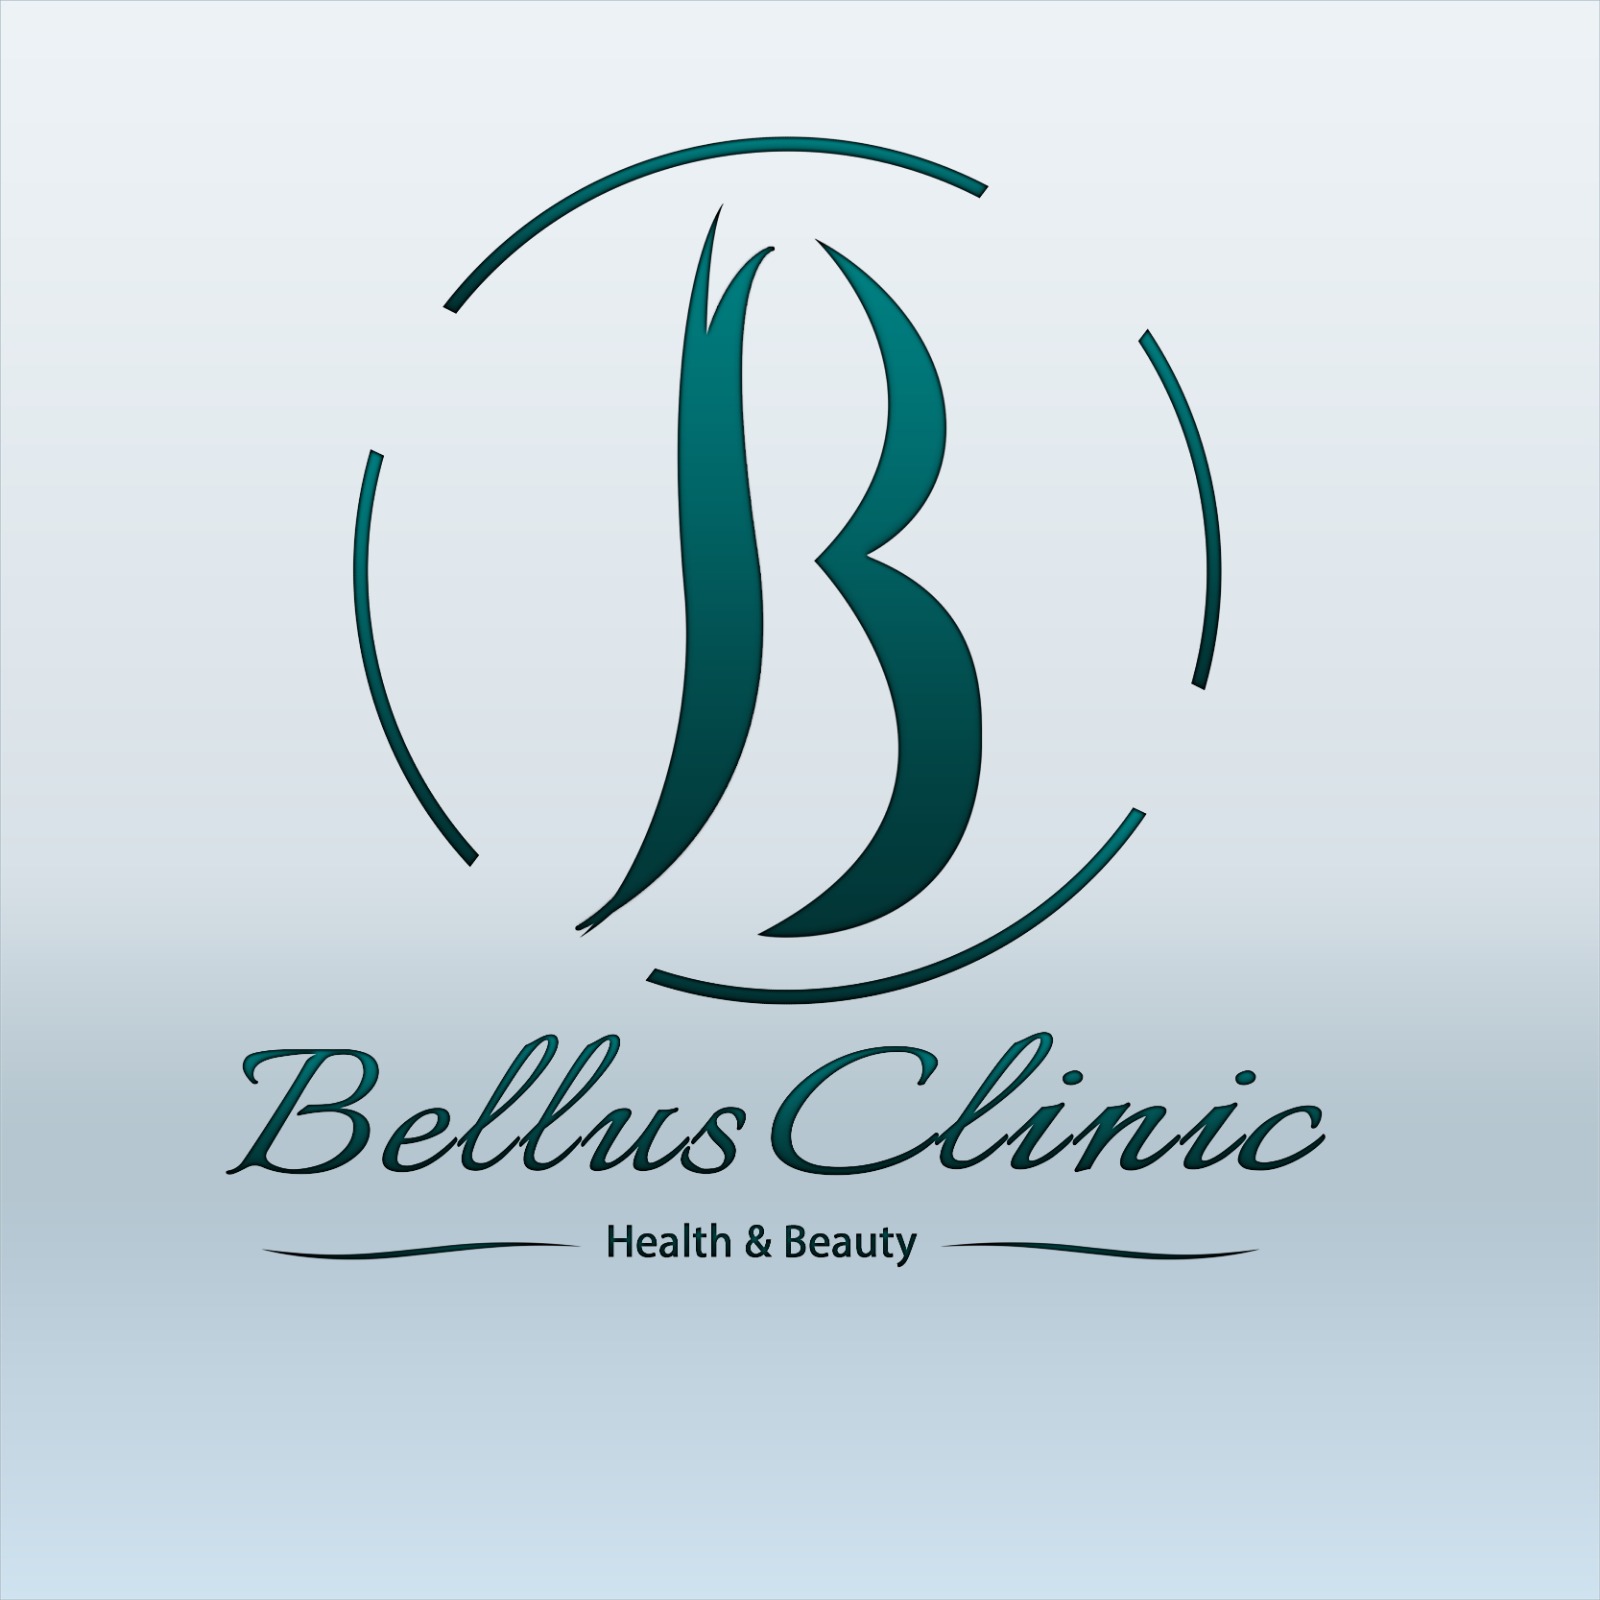 Bellus Clinic